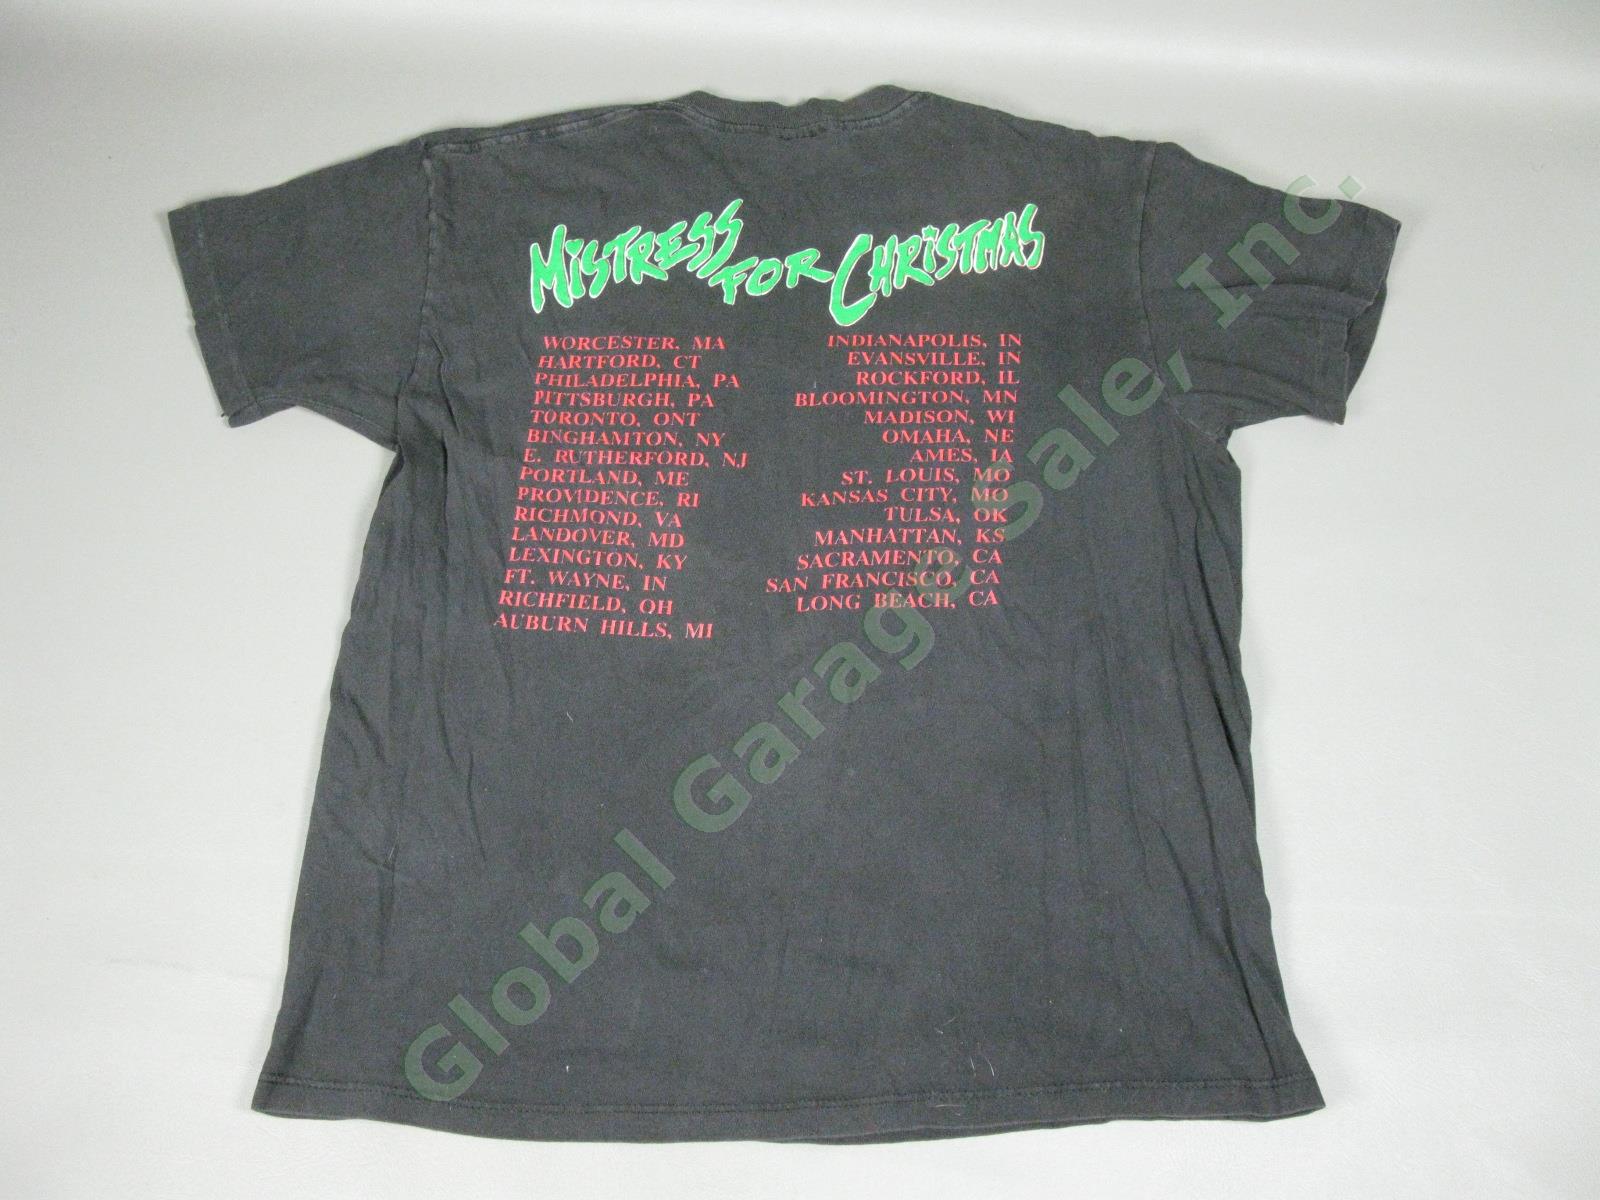 2 Vintage AC/DC T-Shirts Lot Mistress For Christmas Concert Tour & TNT Size M/L 2